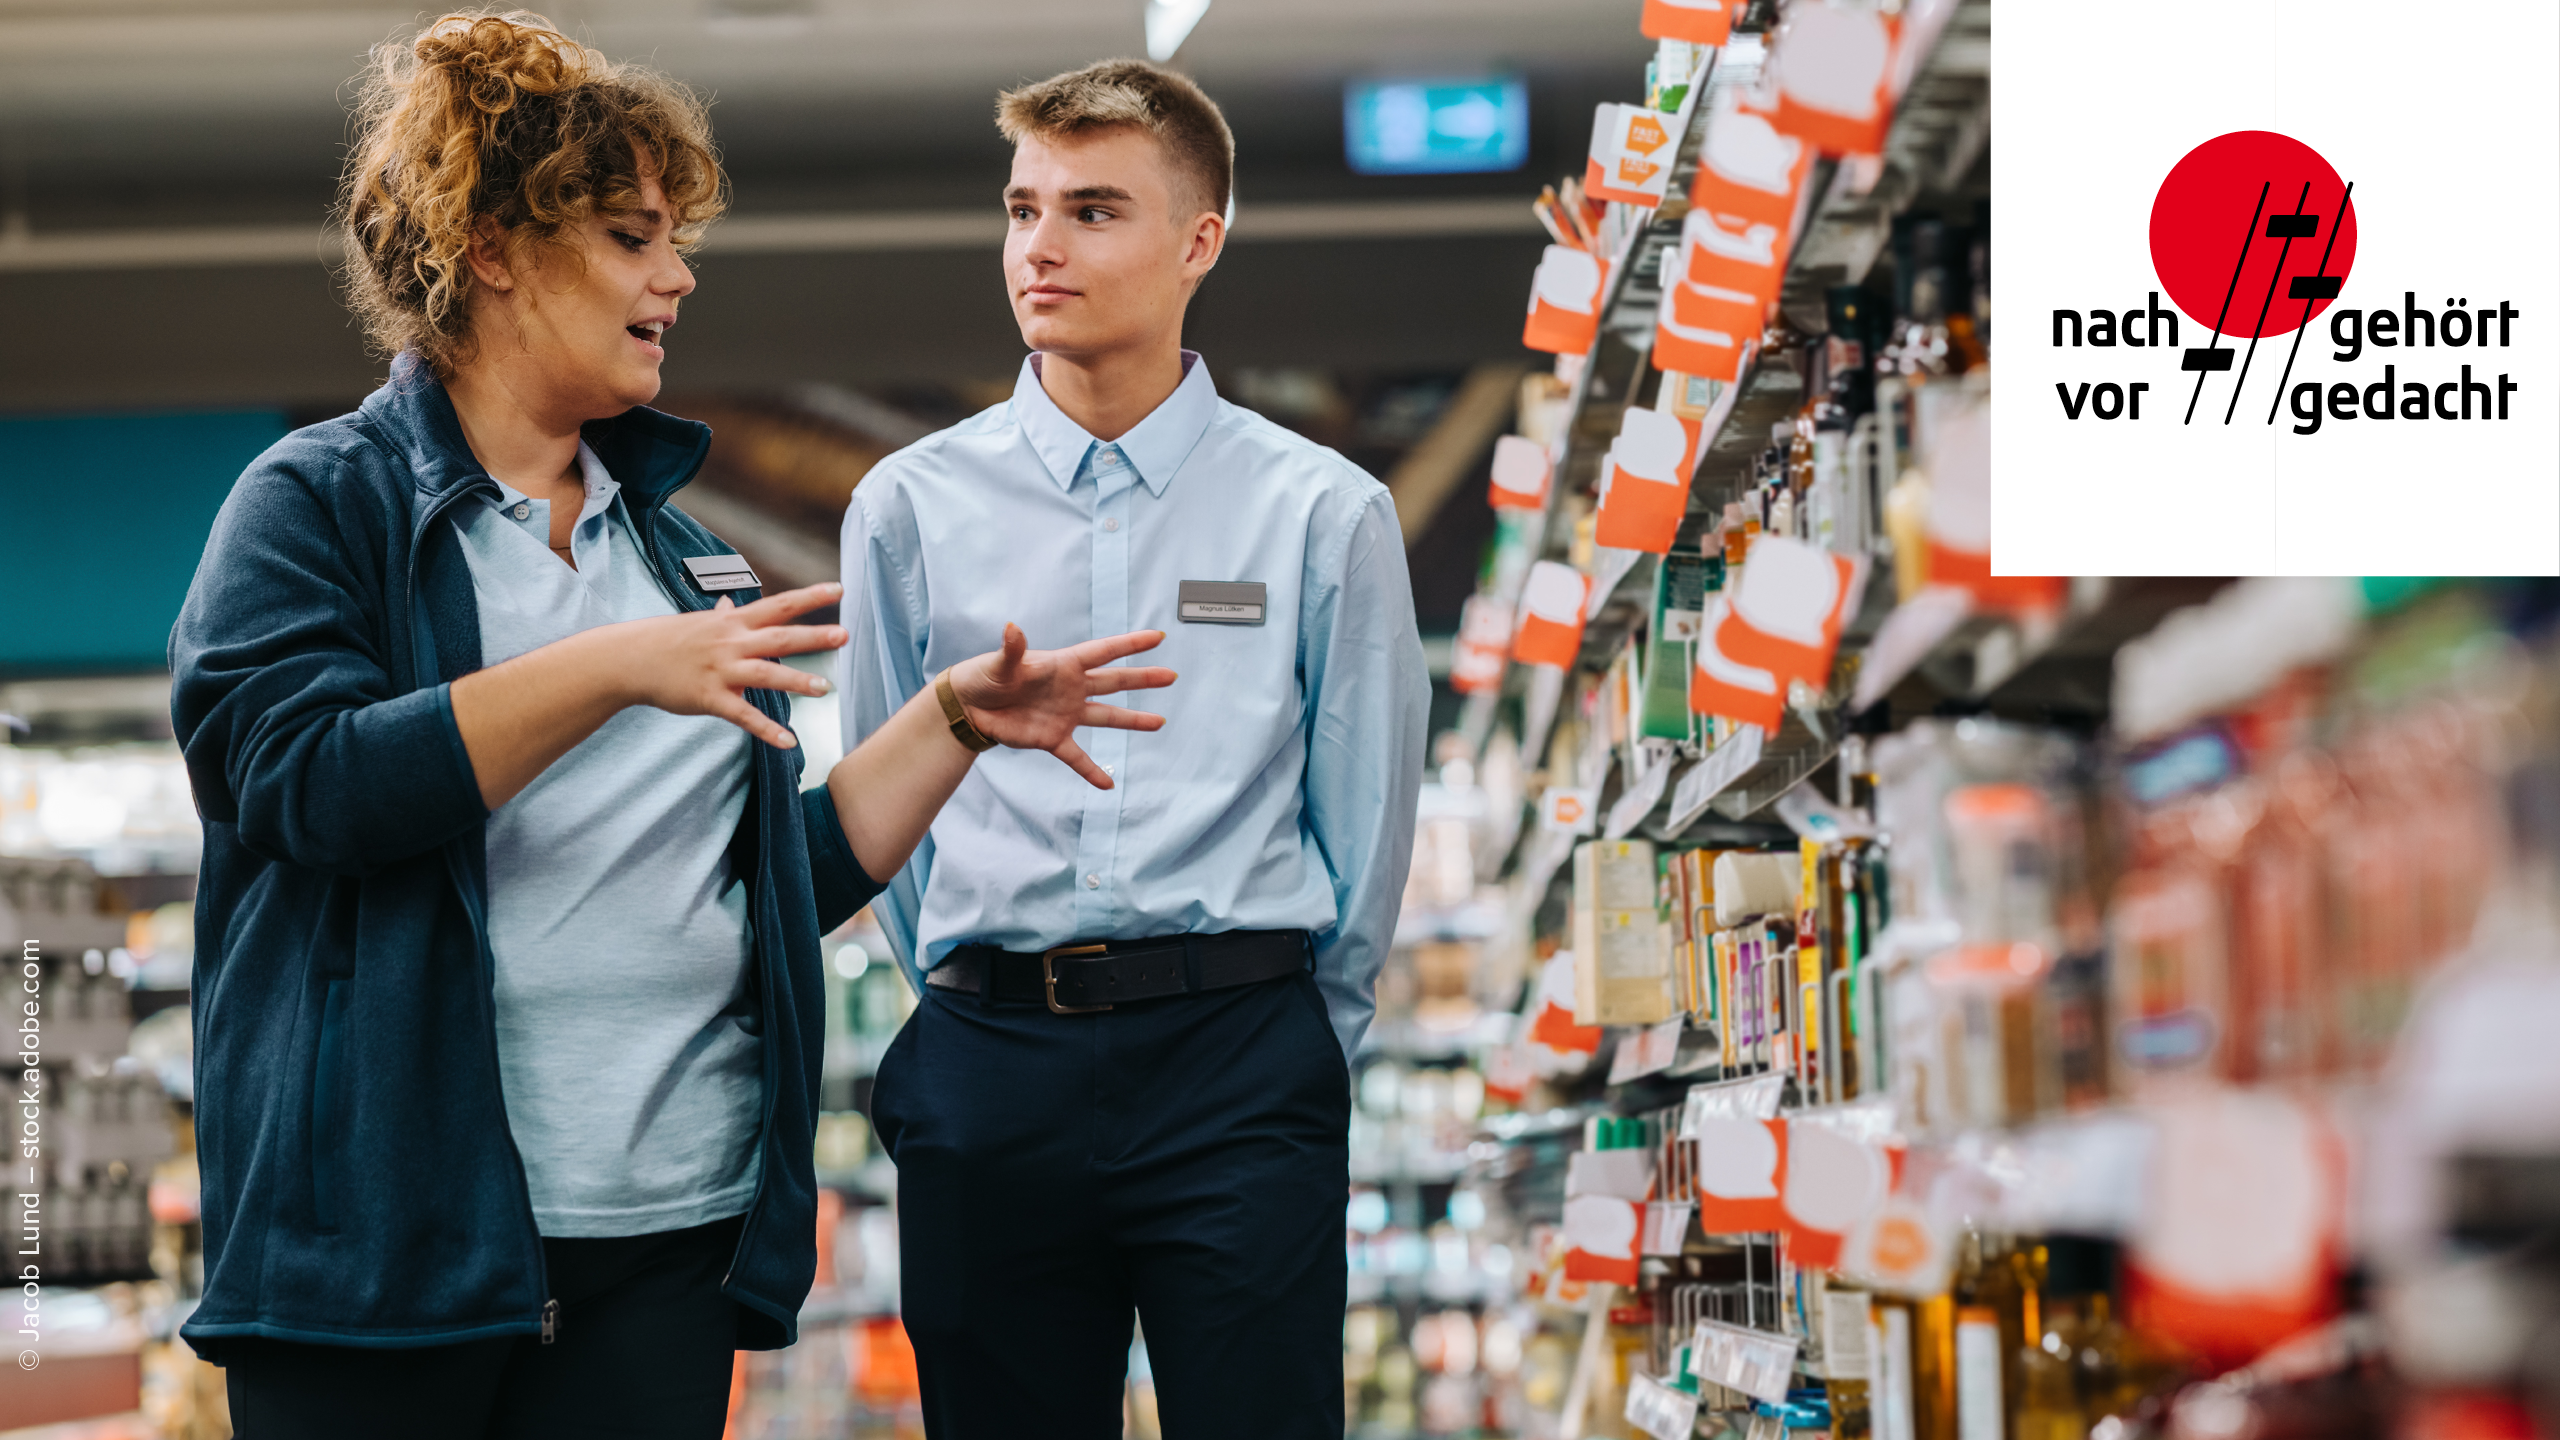 Supermarkt Managerin erklärt Lehrling etwas während sie beide vor einem Regal stehen. Das Regal und der Hintergrund sind unscharf, Produkte sind nicht zu erkennen. In der rechten oberen Ecke ist das "nachgehört - vorgedacht" Podcast Logo platziert